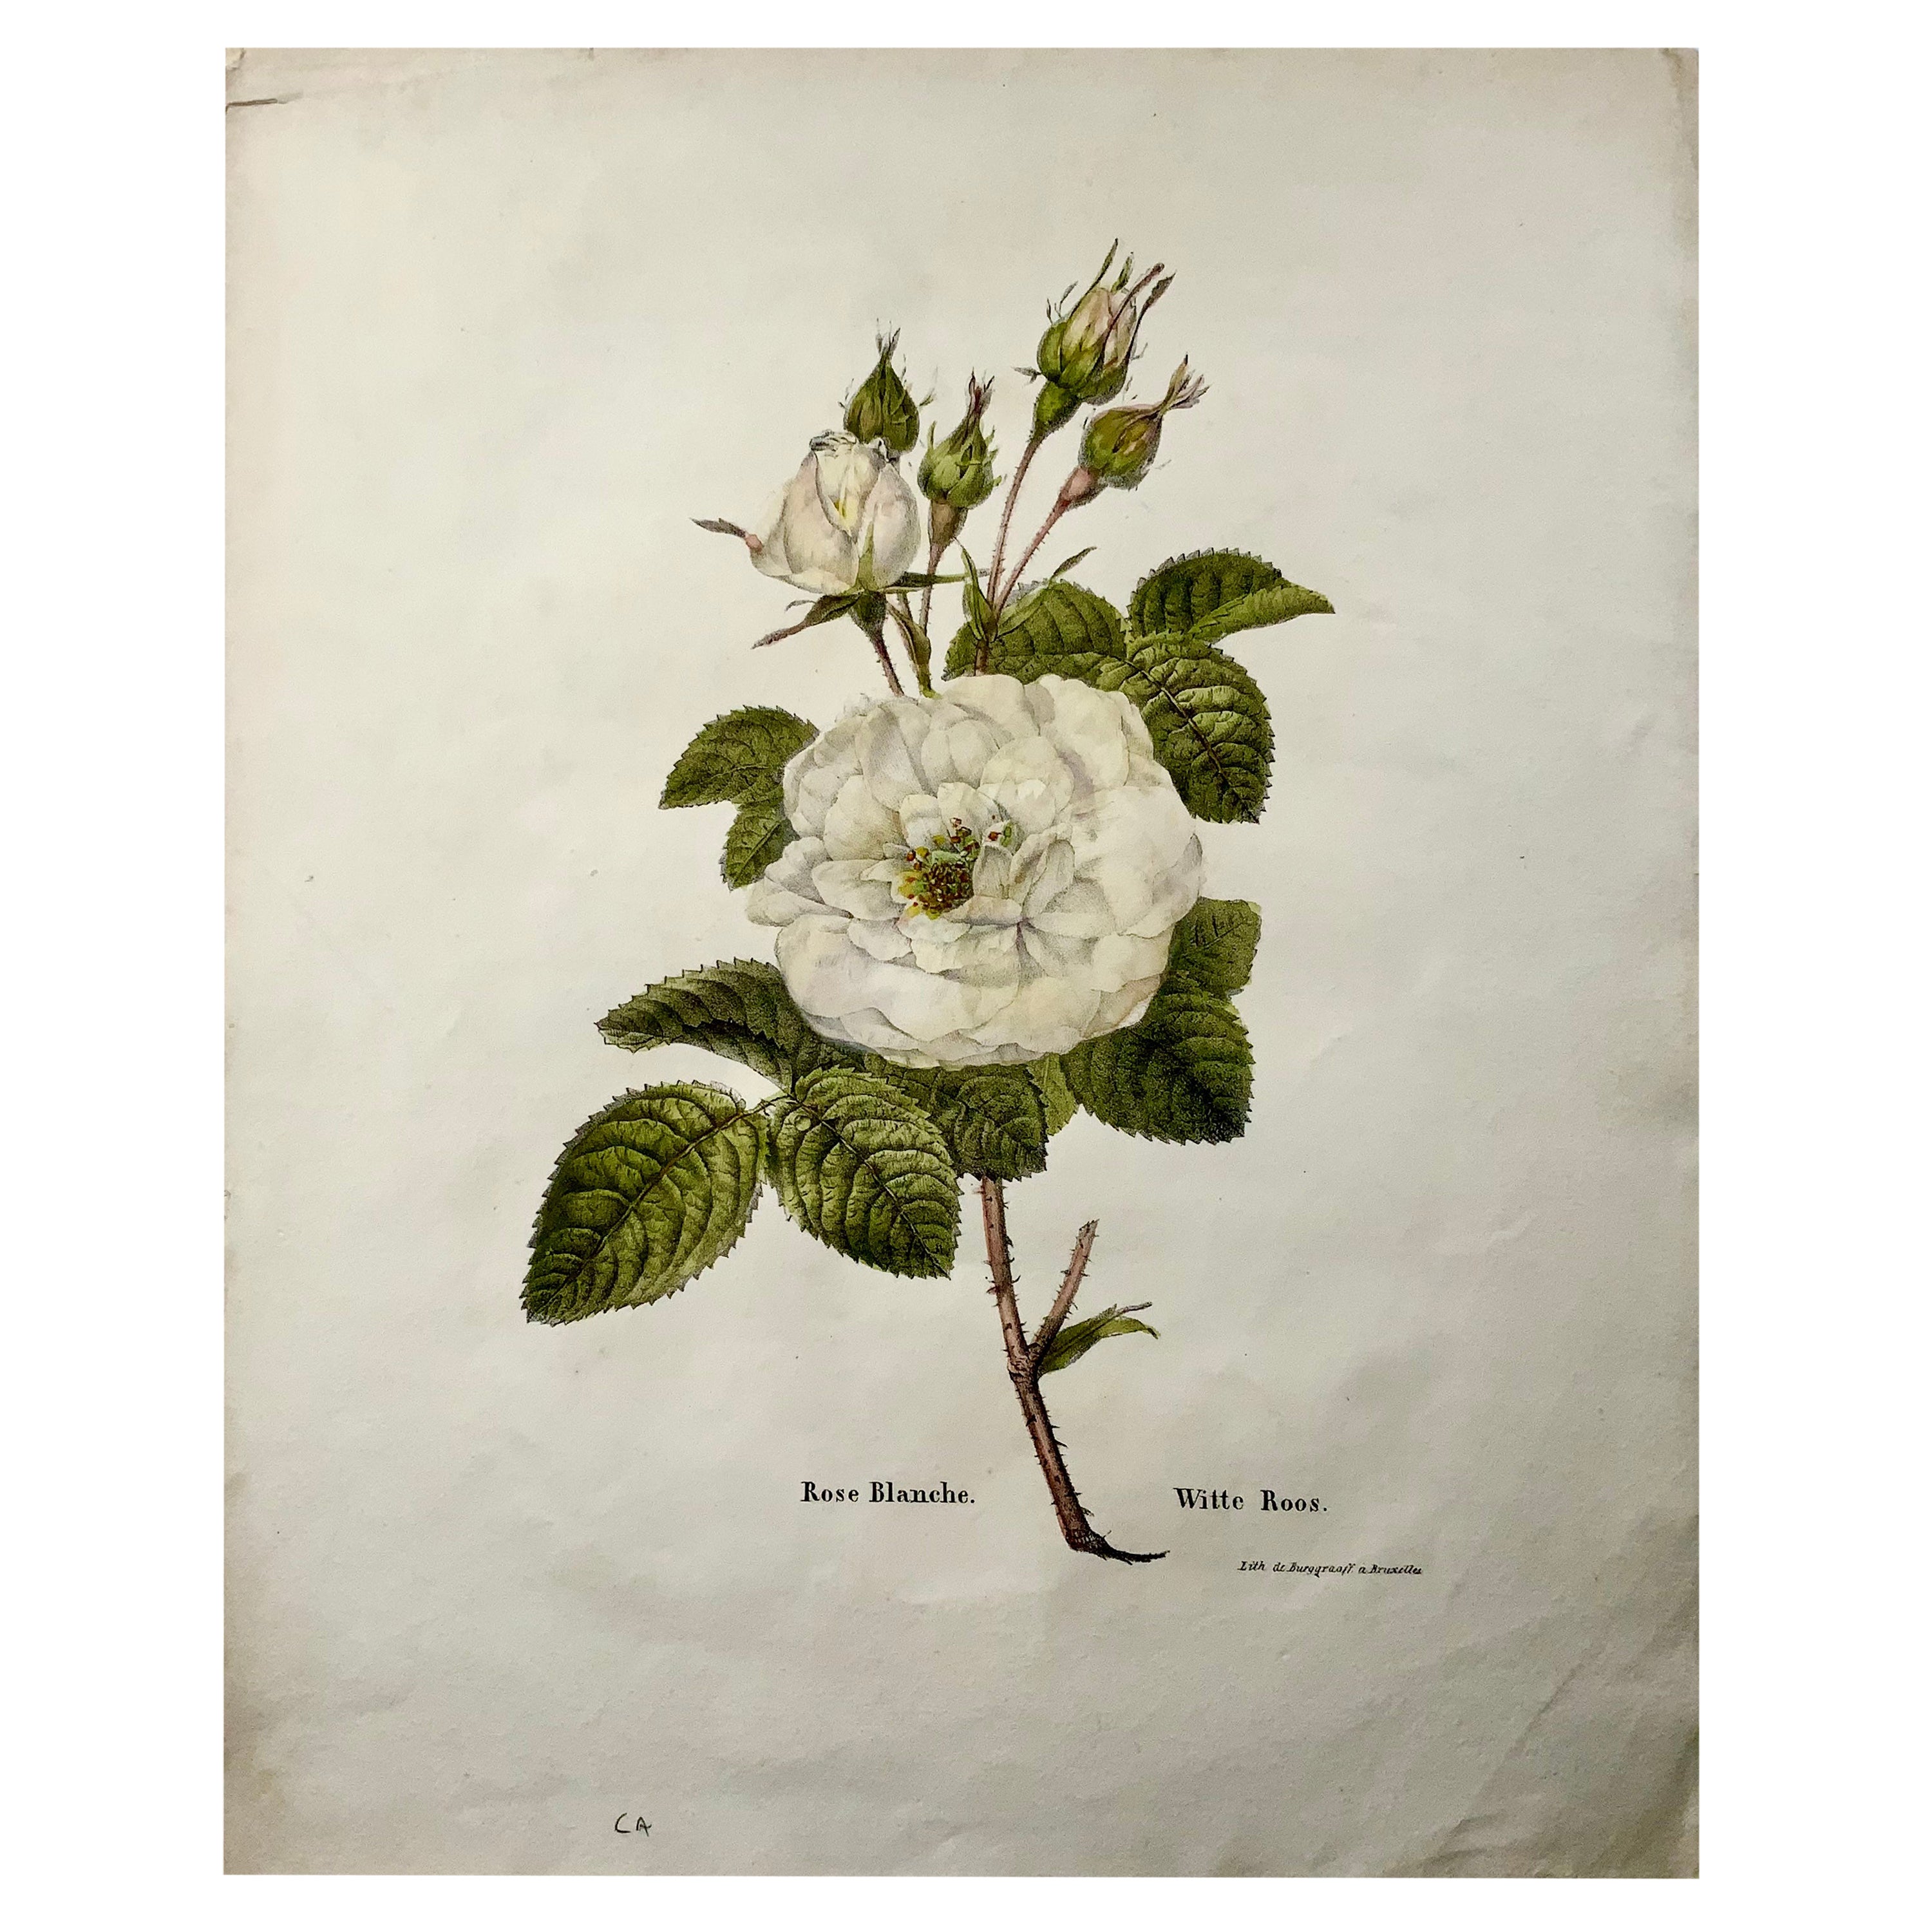 Weiße Rose aus dem Jahr 1820, Lithographie aus Stein von Burggraaf mit handkolorierter Farbe